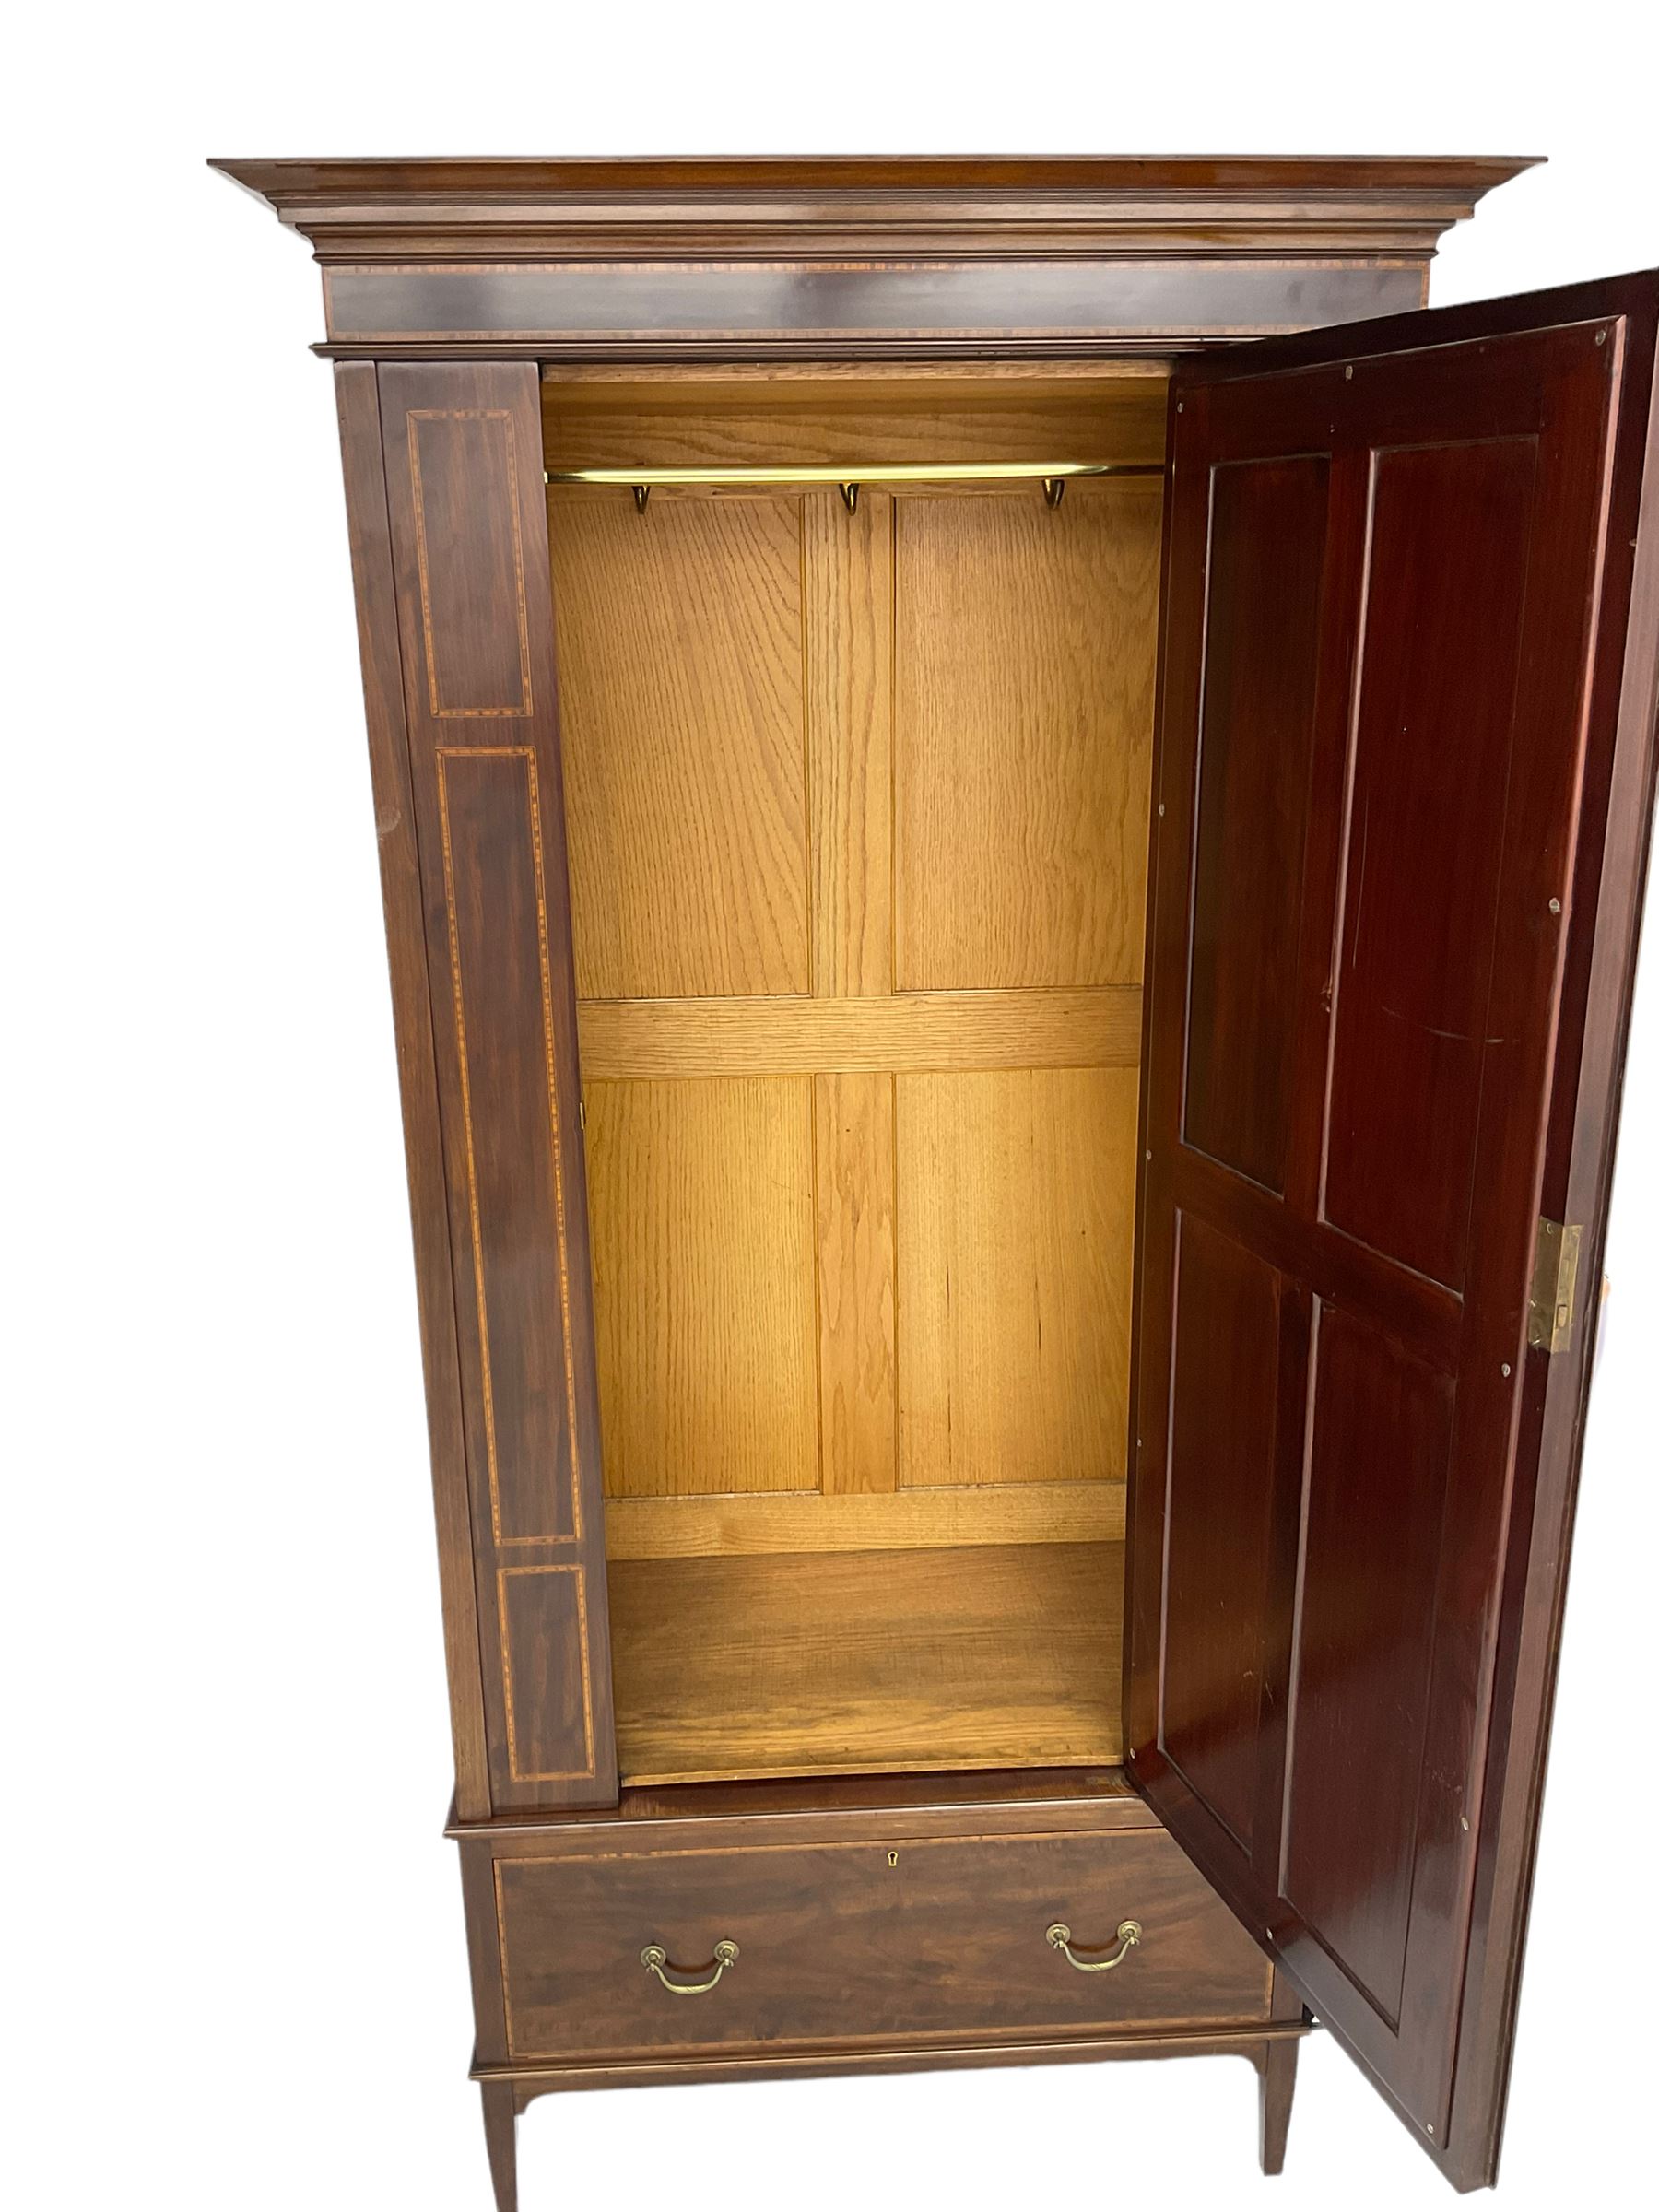 Edwardian inlaid mahogany wardrobe - Image 2 of 5